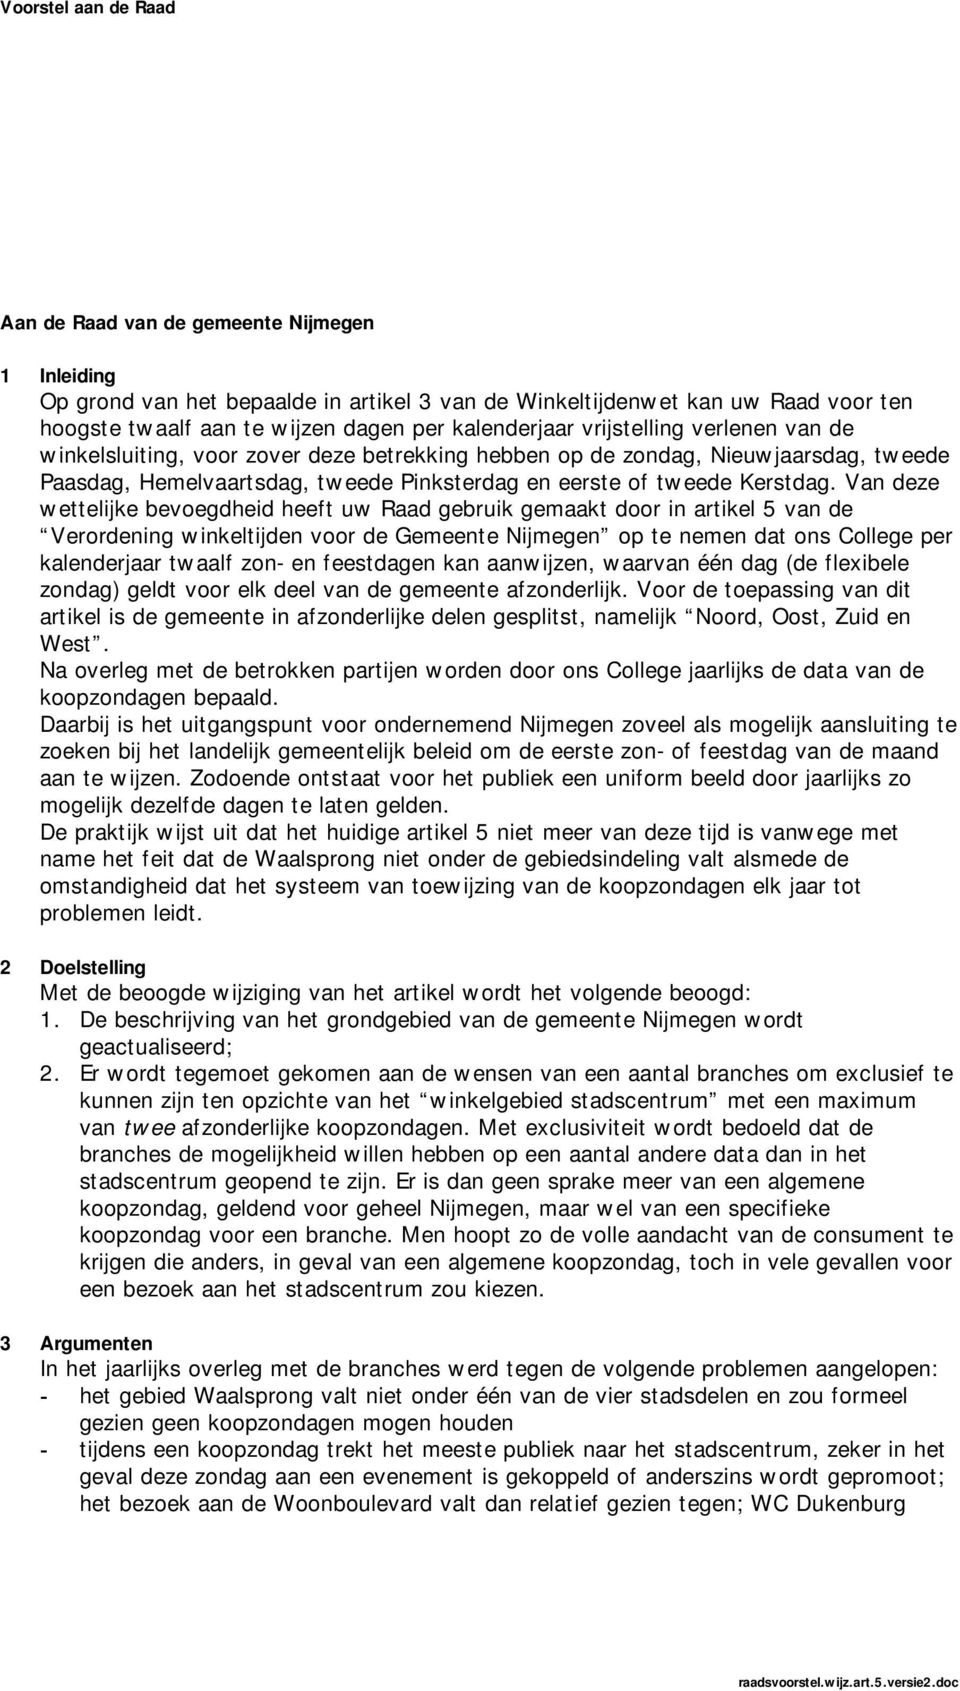 Van deze wettelijke bevoegdheid heeft uw Raad gebruik gemaakt door in artikel 5 van de Verordening winkeltijden voor de Gemeente Nijmegen op te nemen dat ons College per kalenderjaar twaalf zon- en